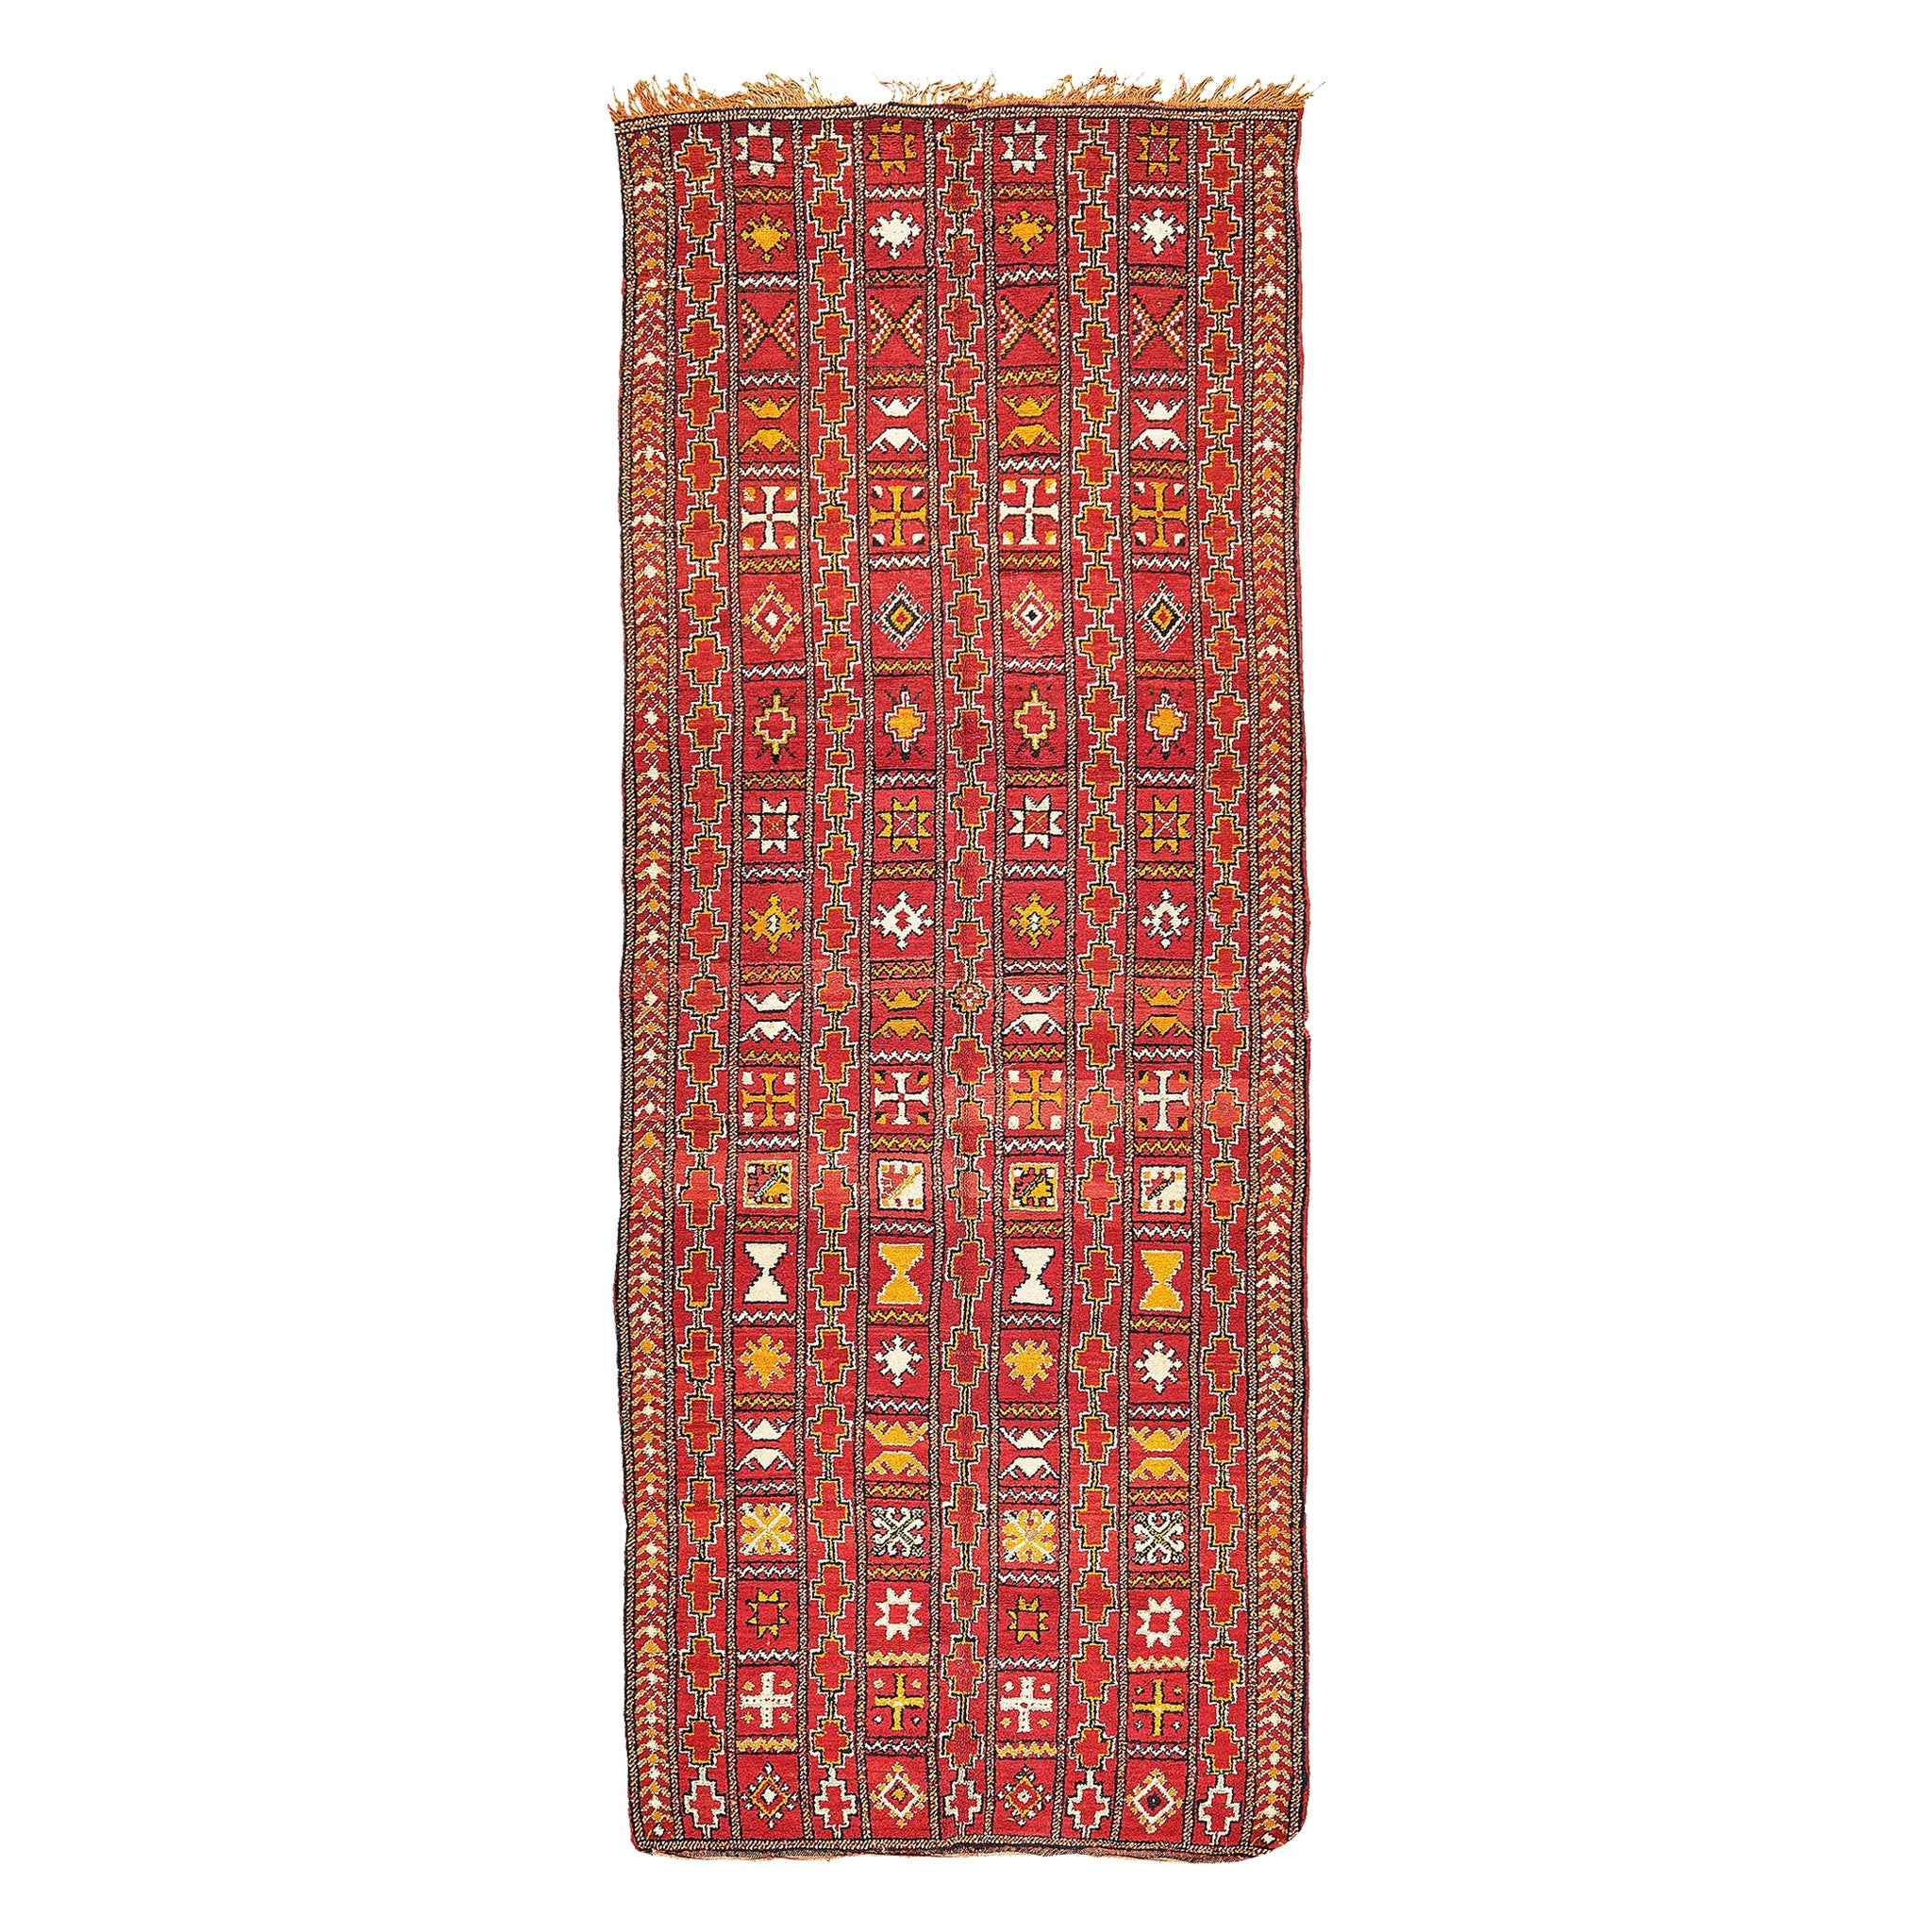 Marokkanischer Teppich aus der Vintage-Kollektion High Atlas